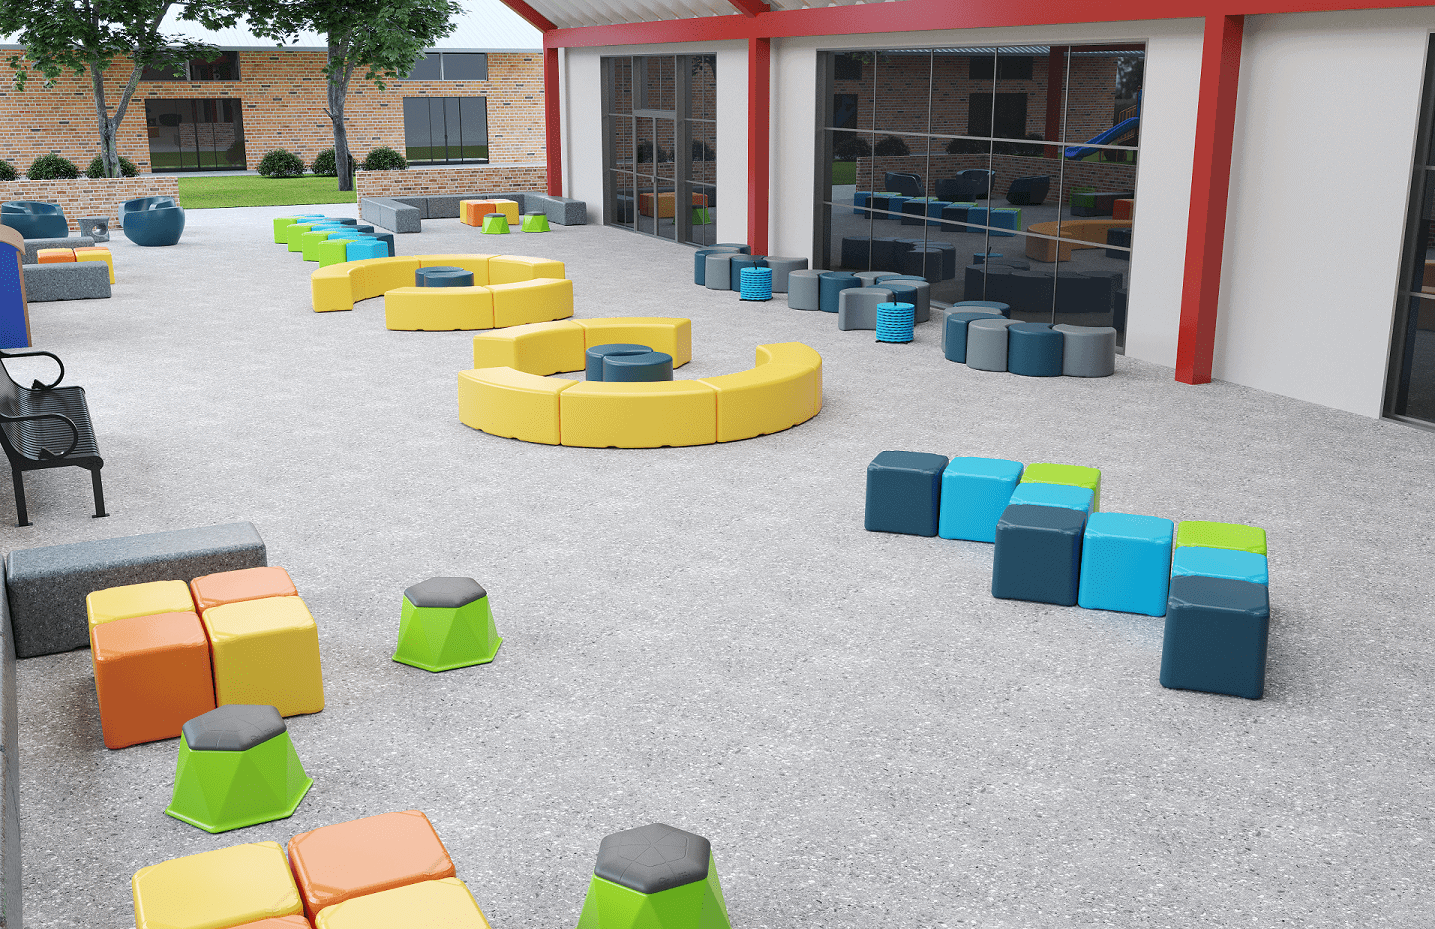 Outdoor Classroom Space: School Specialty